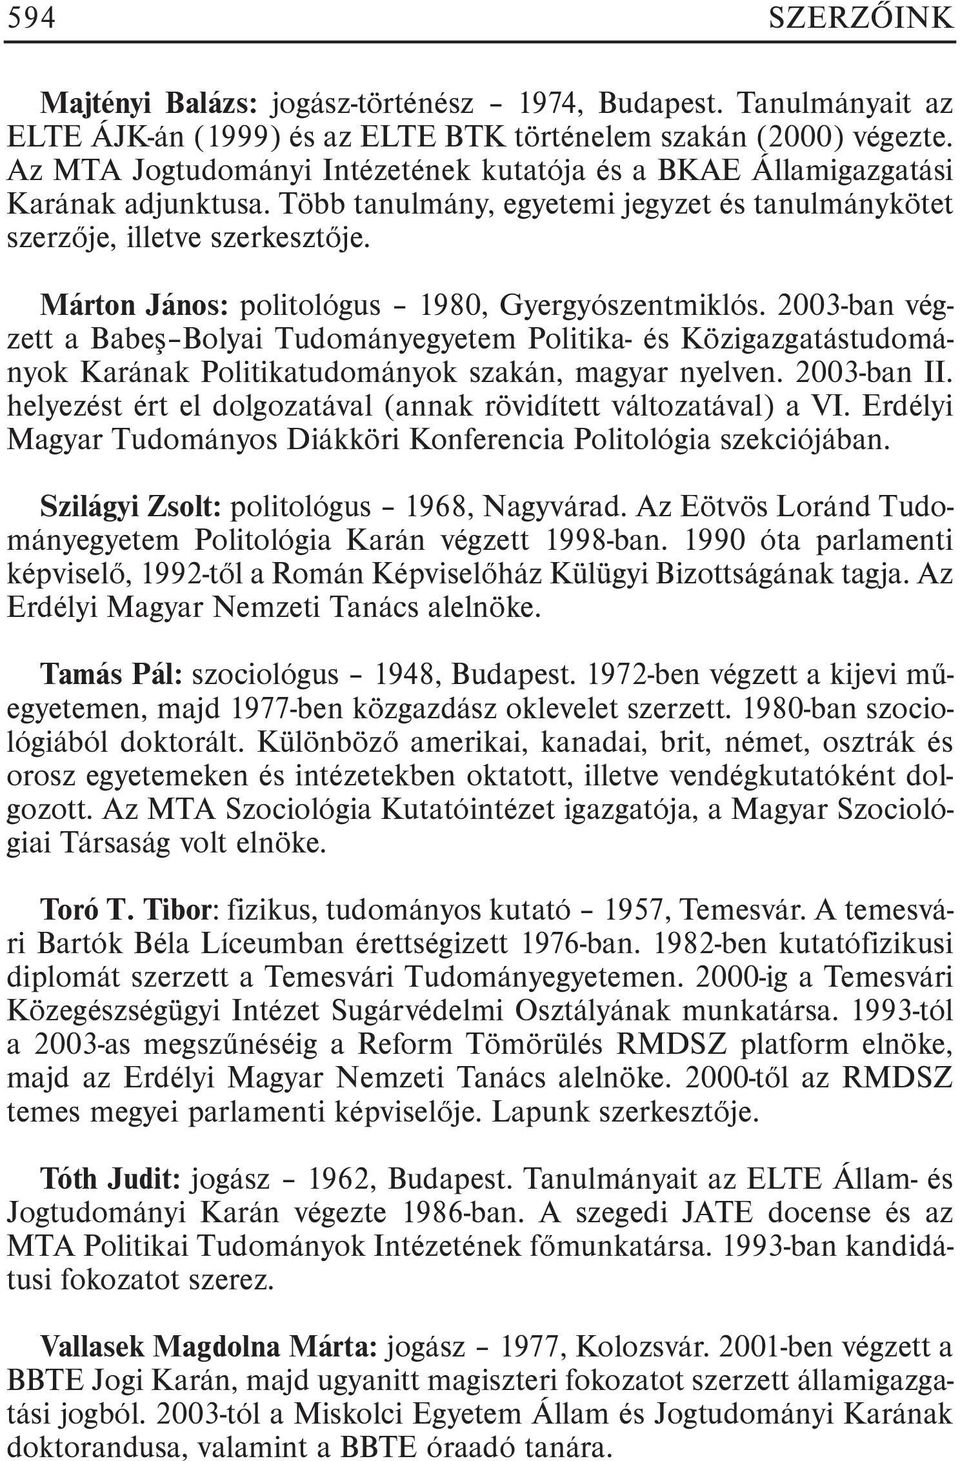 Márton János: politológus 1980, Gyergyószentmiklós. 2003-ban végzett a Babeº Bolyai Tudományegyetem Politika- és Közigazgatástudományok Karának Politikatudományok szakán, magyar nyelven. 2003-ban II.